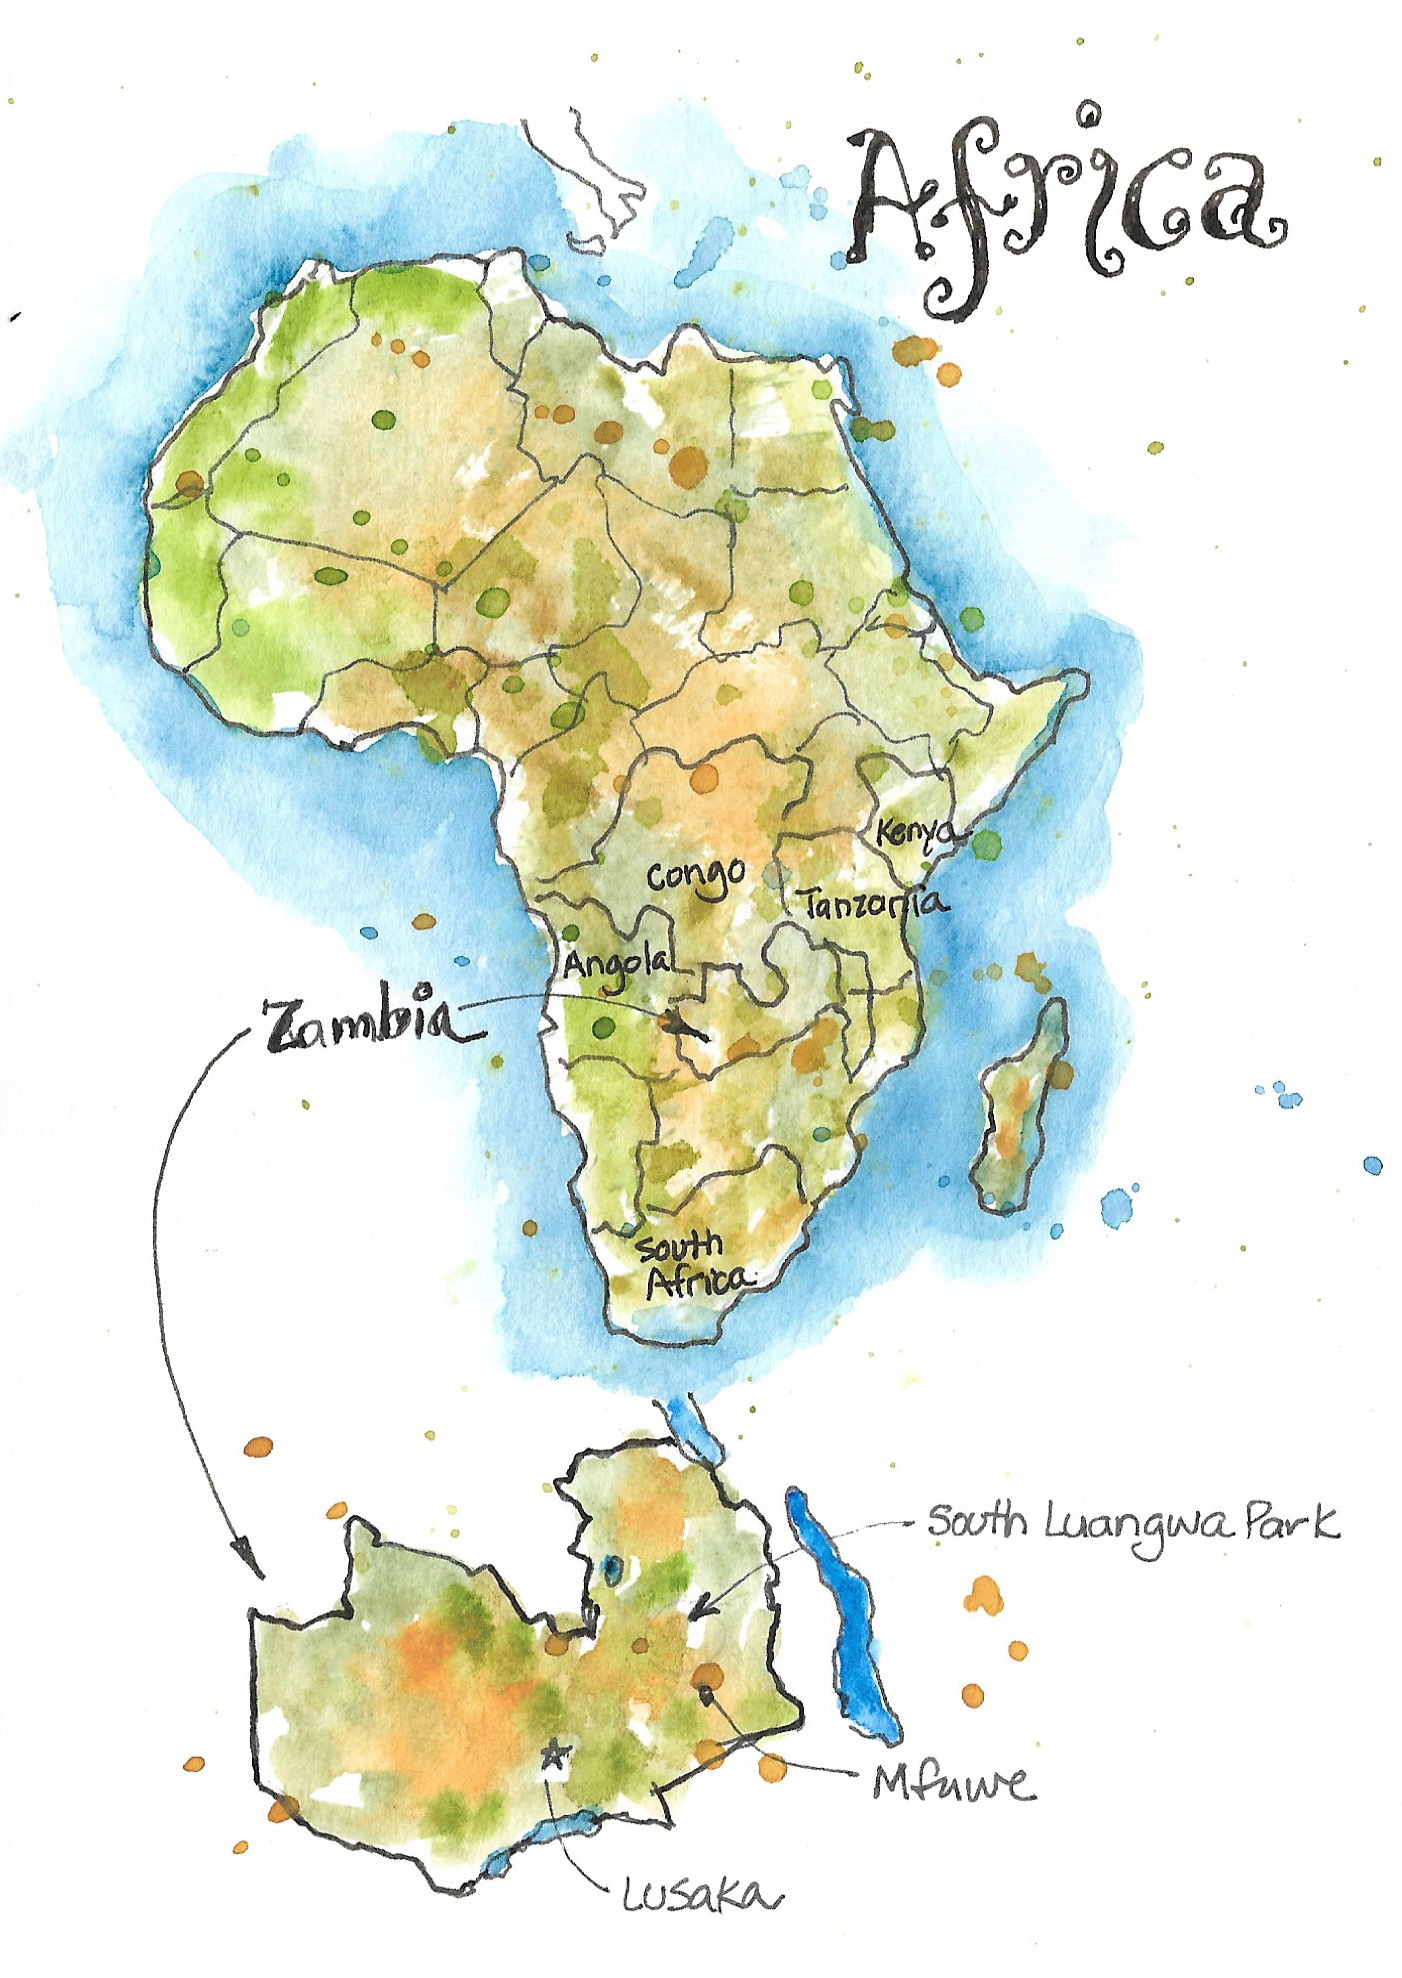 Zambia adventure